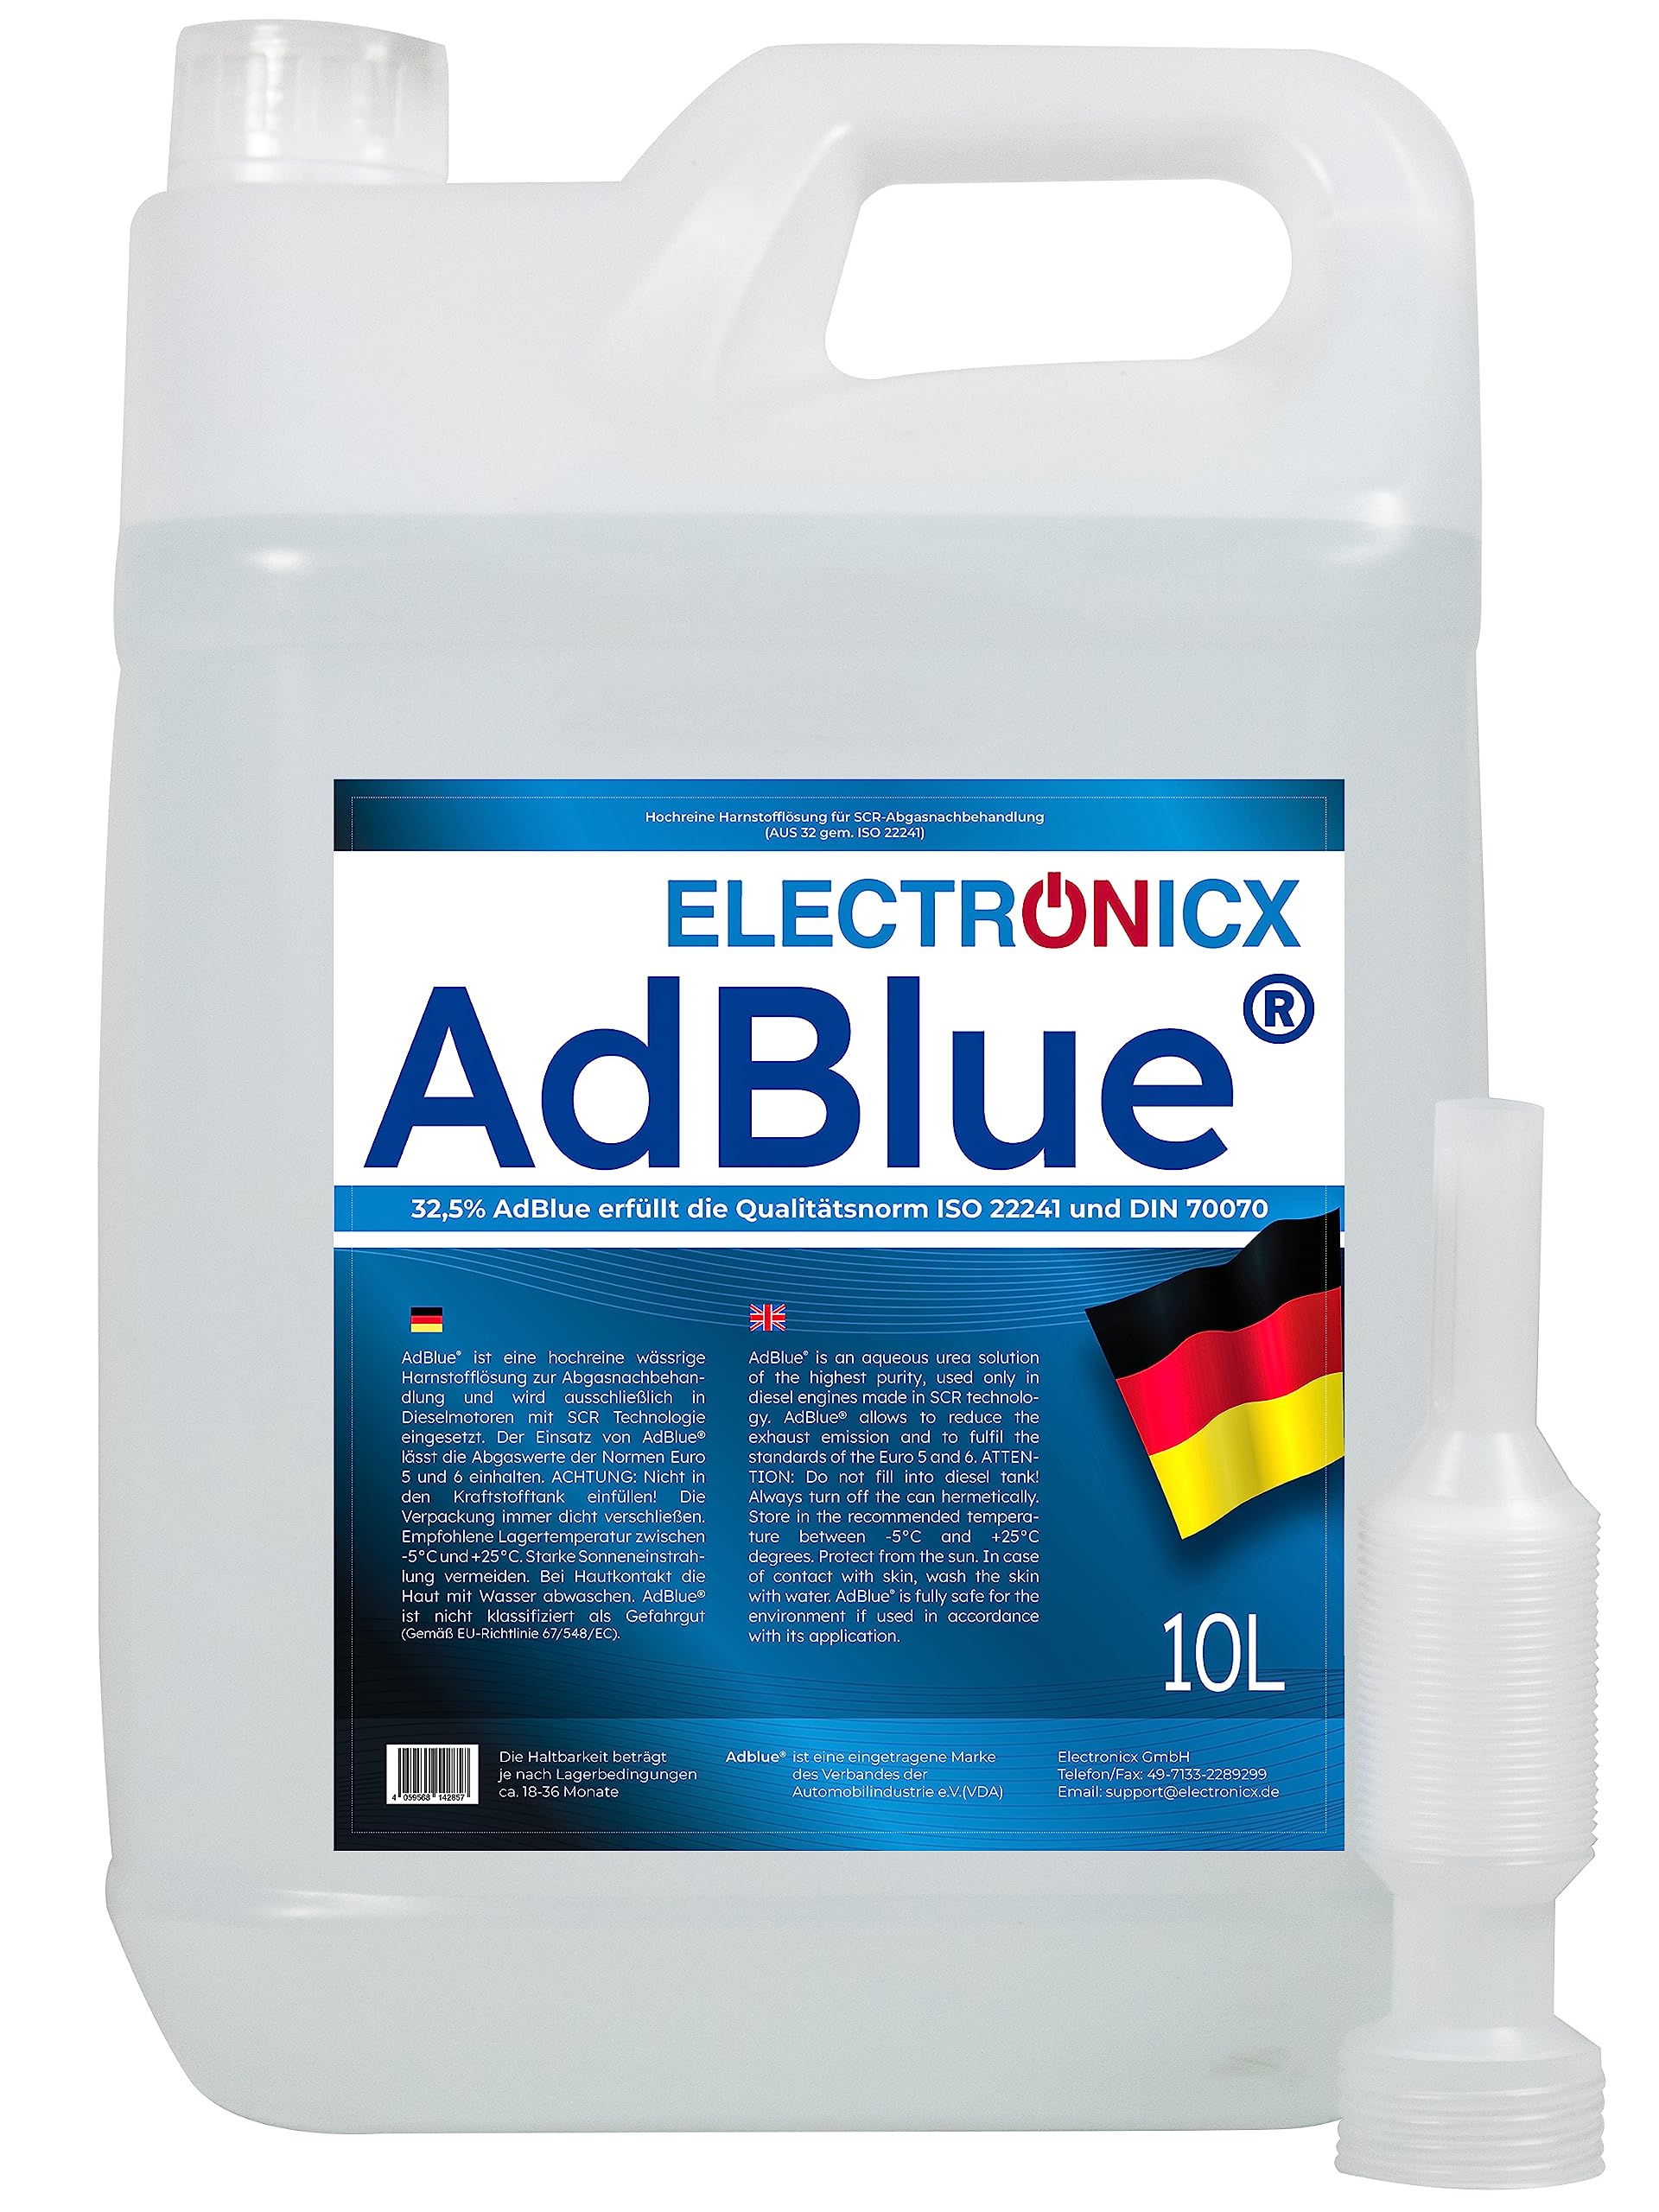 Electronicx AdBlue 80 Liter 8 X 10L Liter für Diesel Kanister Harnstofflösung gemäß ISO 22241/1 DIN 70070 VDA lizenziert für SCR-Abgasnachbehandlung Ad Blue Adblue kaufen einfüllstutzen adblue